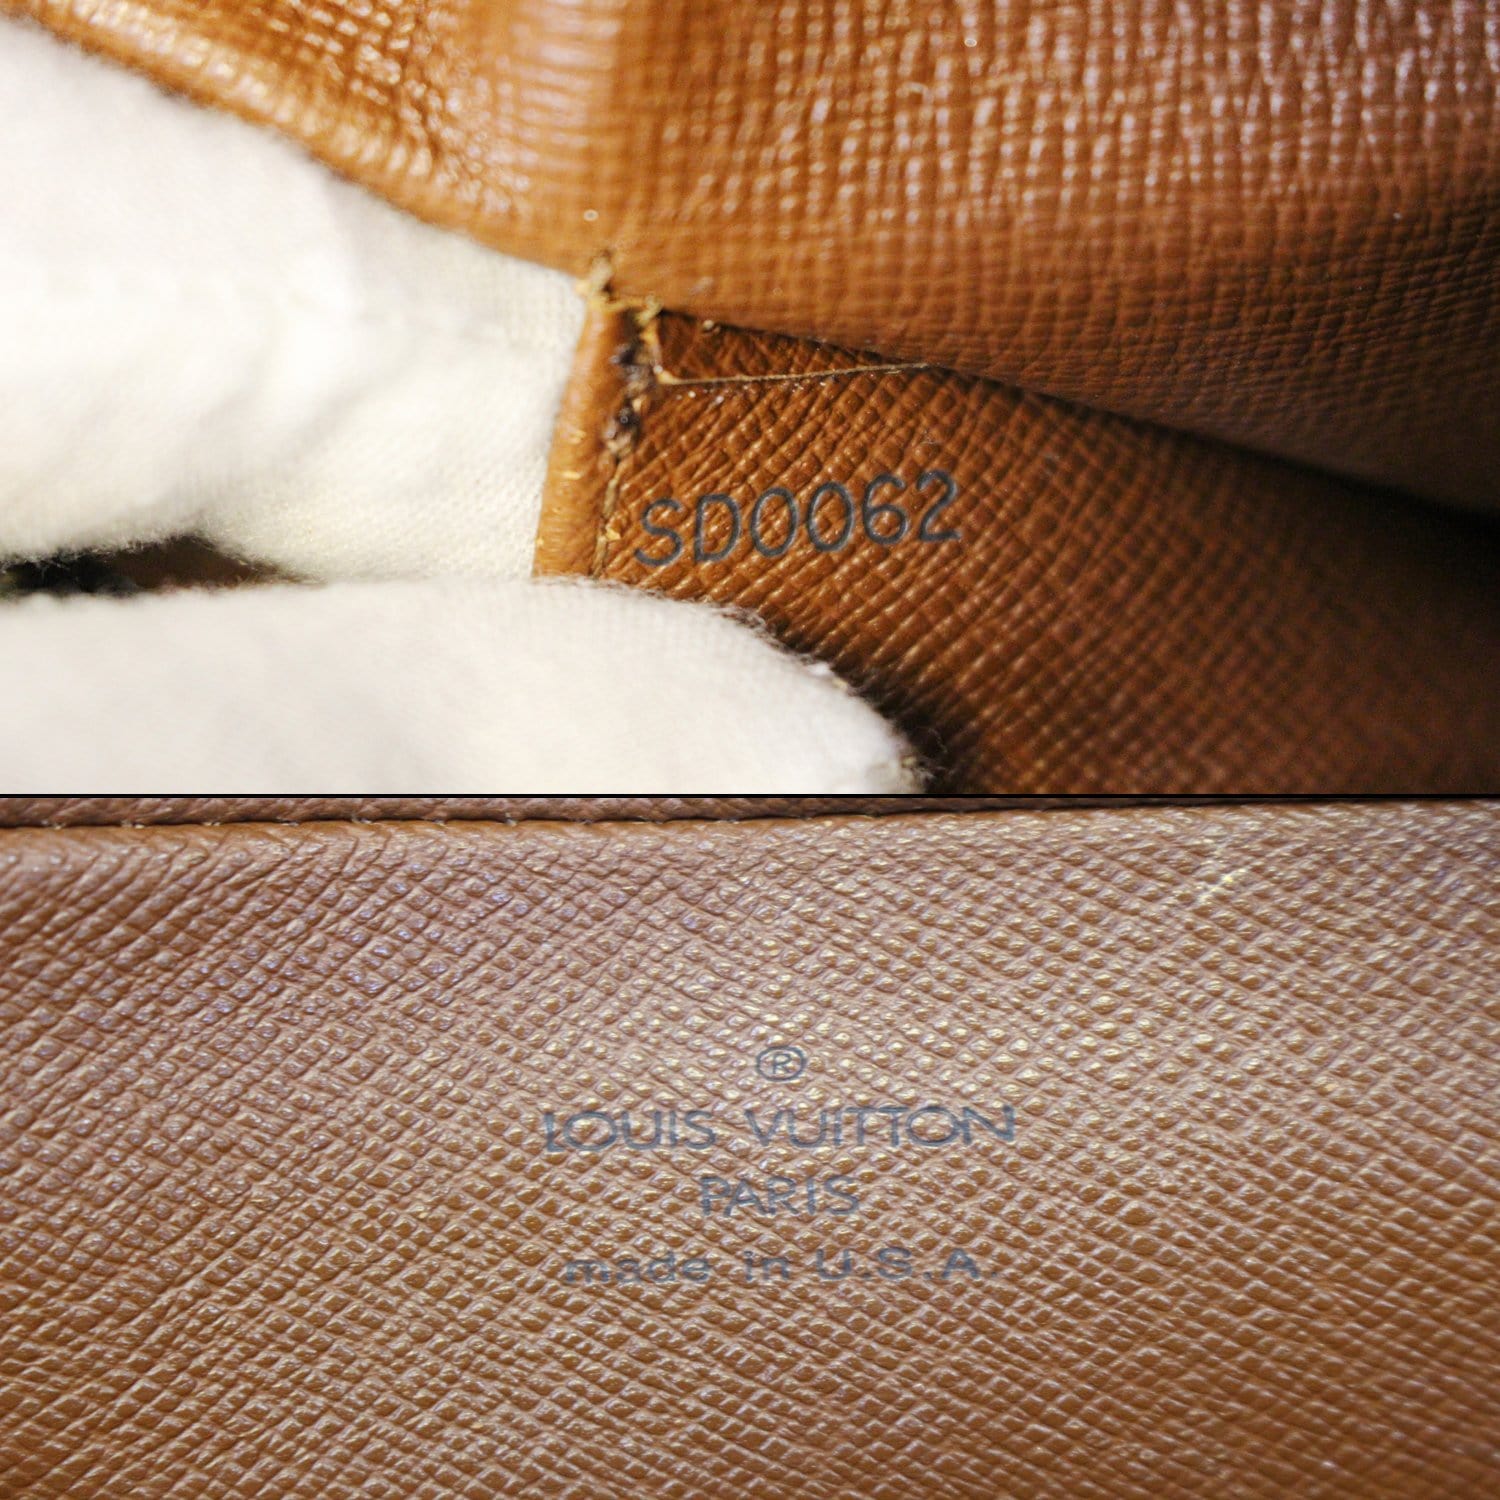 M46321 Louis Vuitton Monogram Canvas Cité Handbag